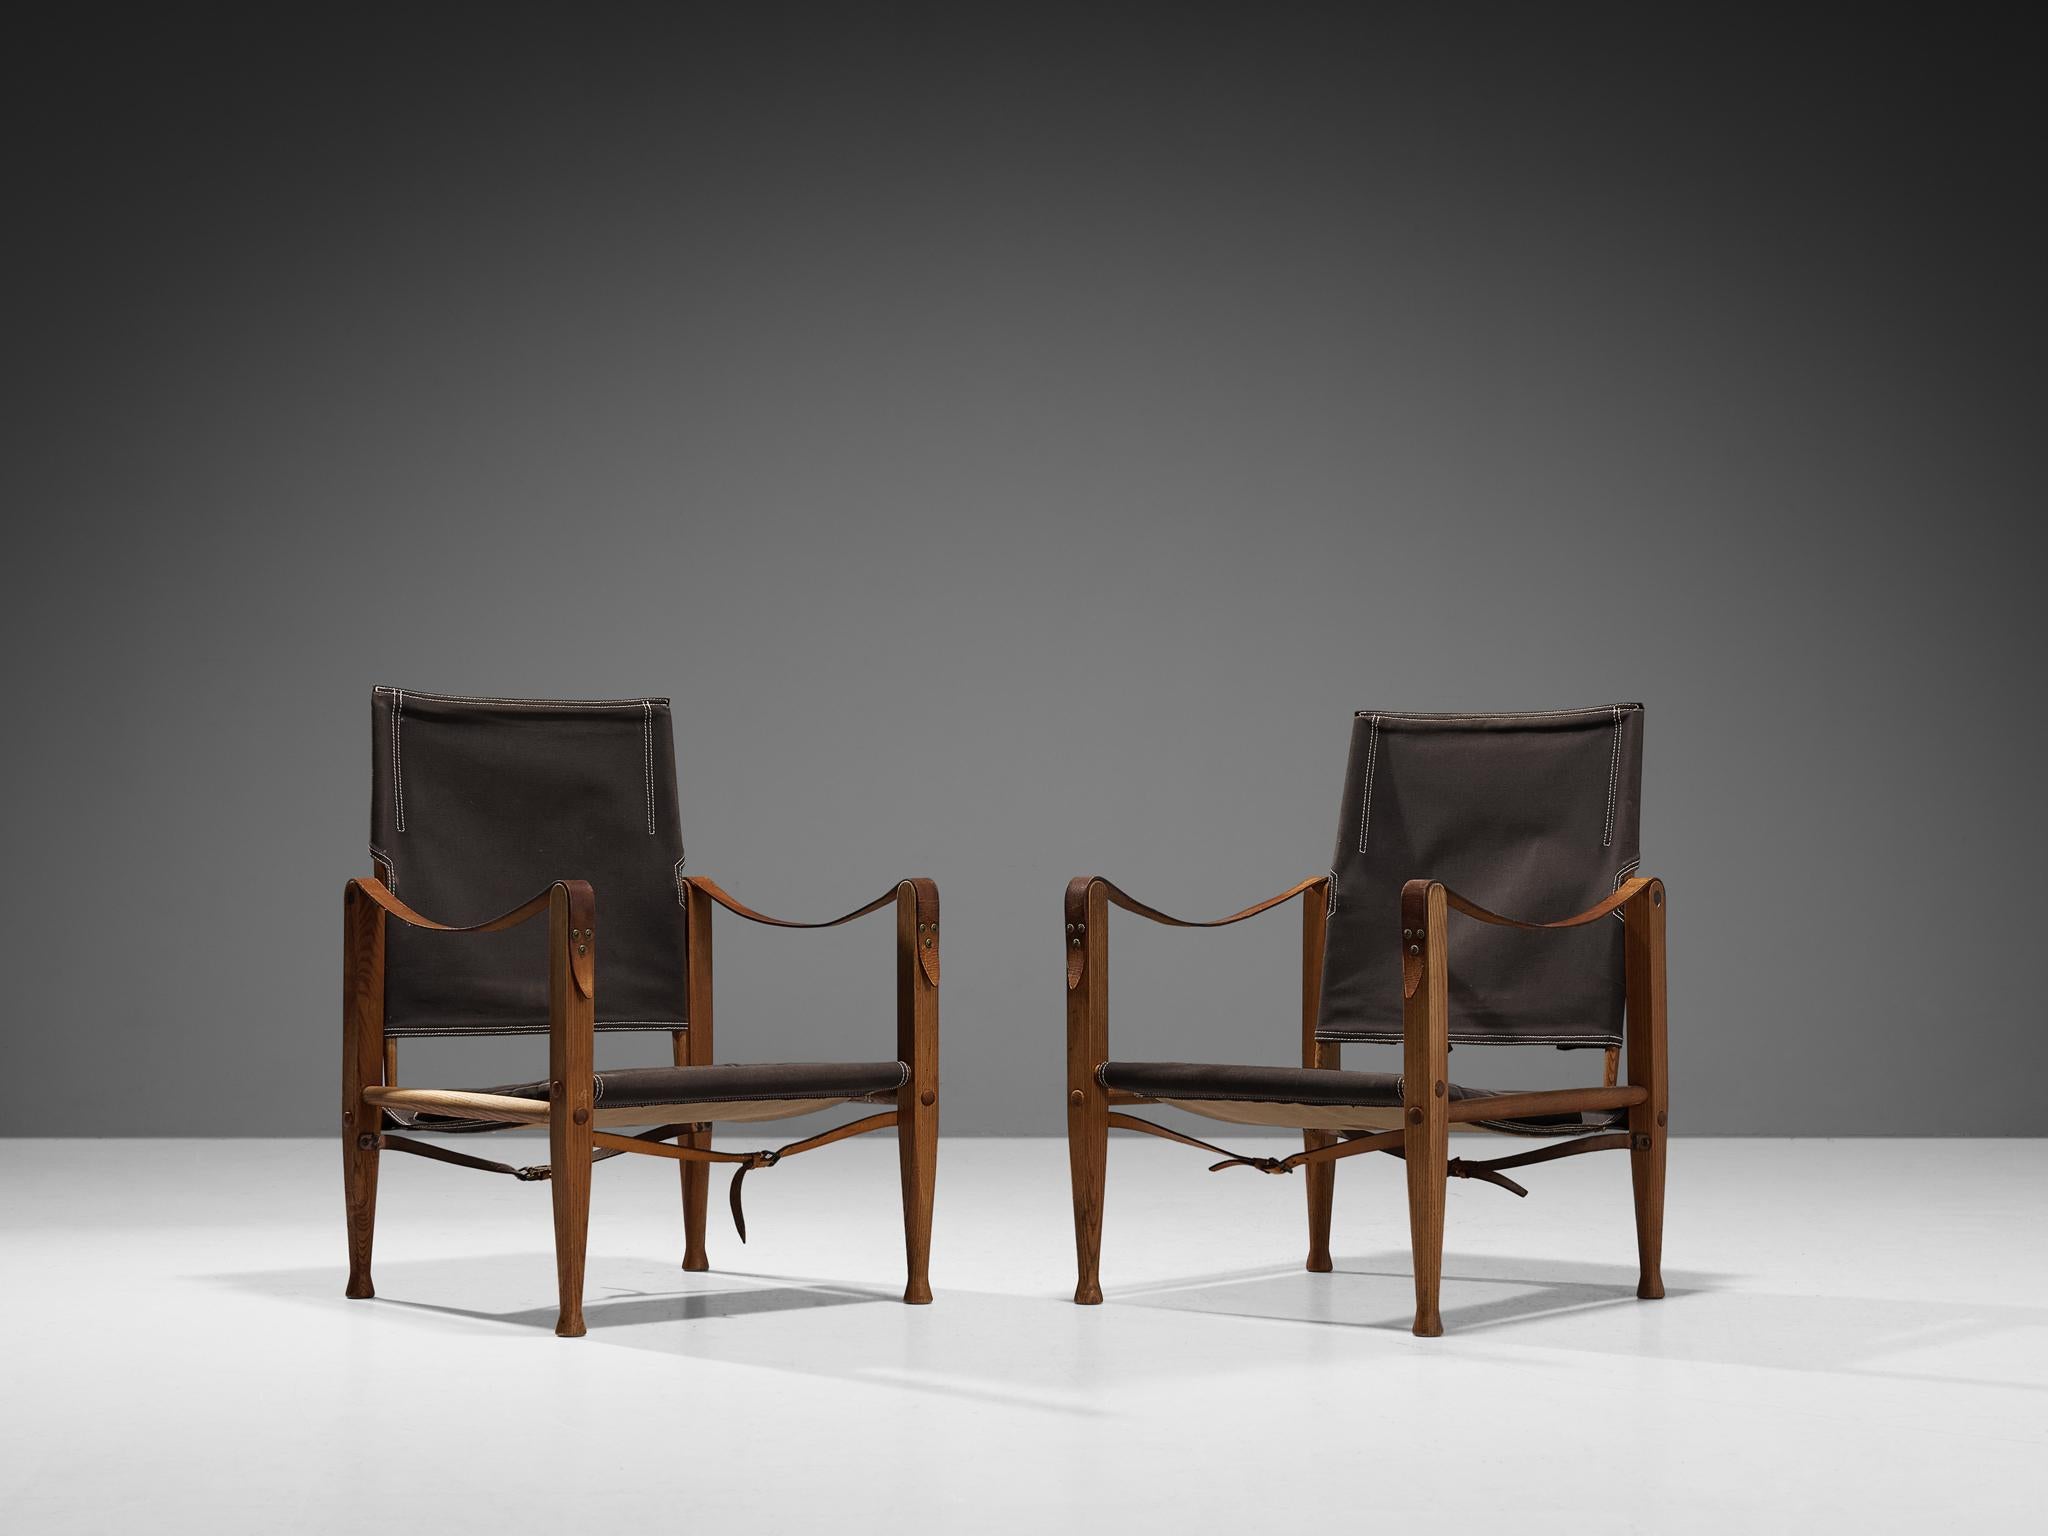 Kaare Klint für Rud Rasmussen, Paar Safaristühle Modell 'KK47000', Esche, Segeltuch, Metall, Messing, Leder, Dänemark, 1933 entworfen und in den 1960er Jahren hergestellt. 

Der Stuhl zeigt sehr elegante und gut durchdachte Linien in Kombination mit